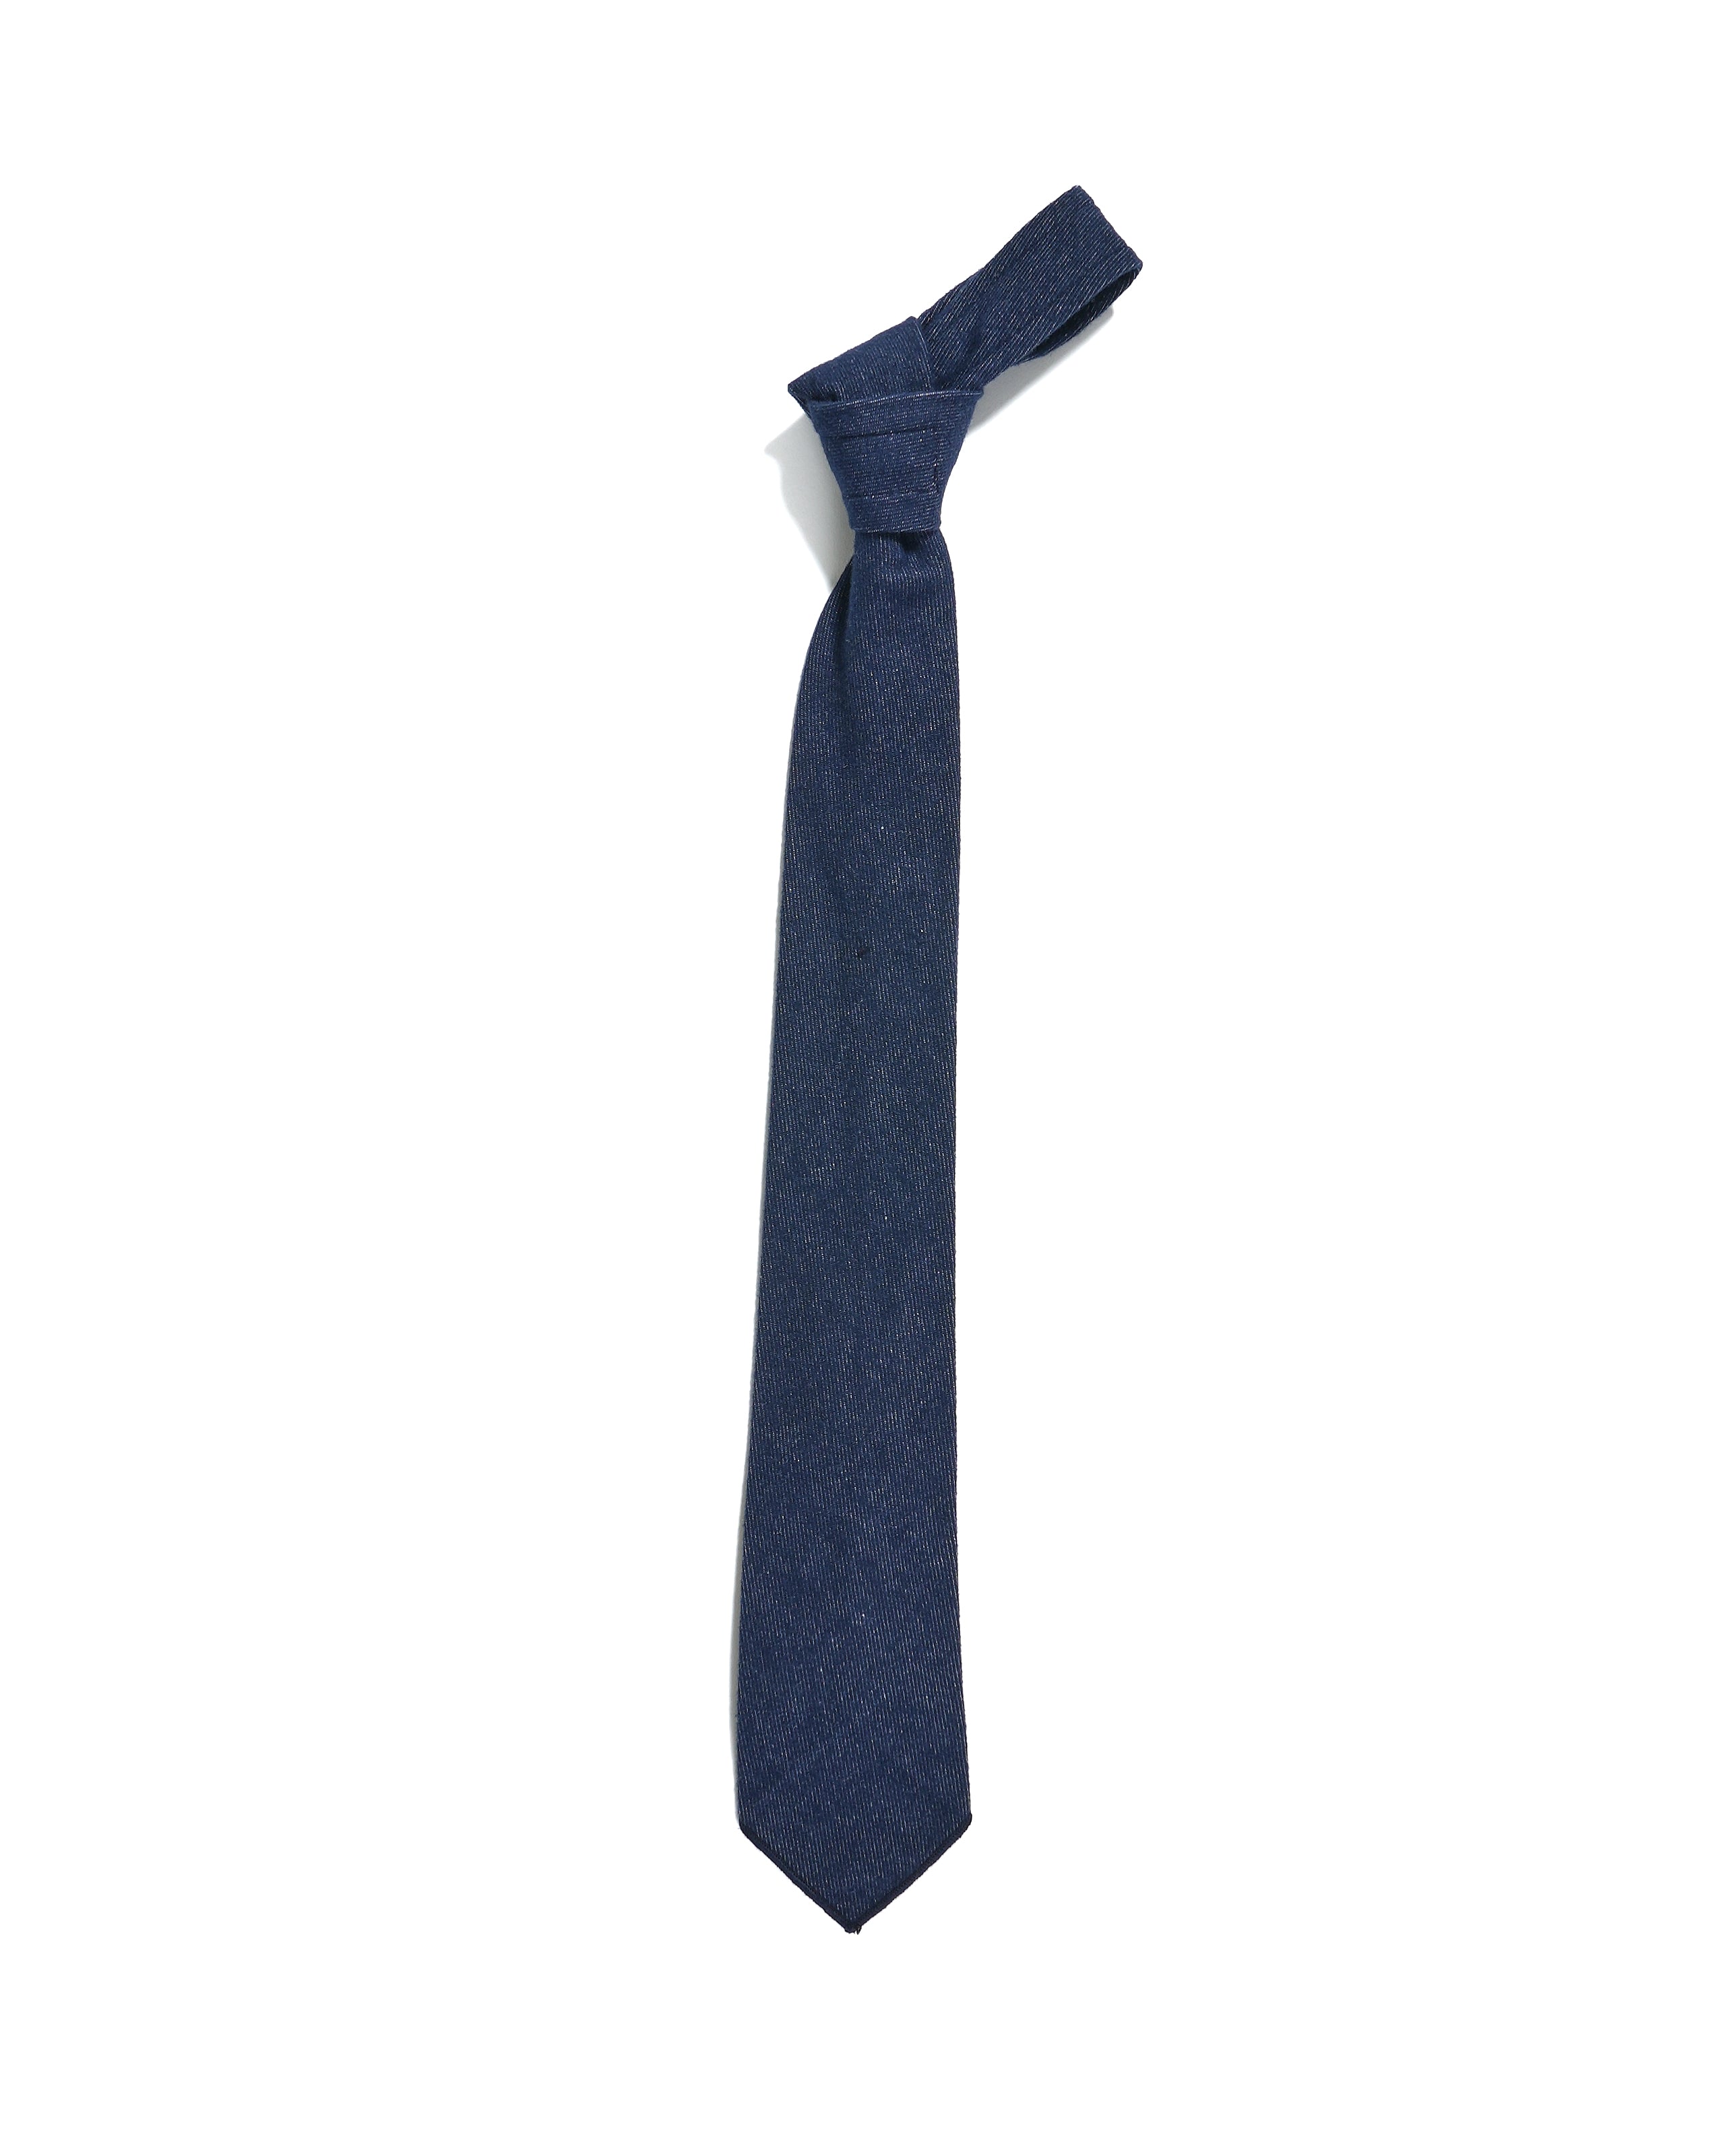 Neck Tie - Indigo Cotton Denim Flannel